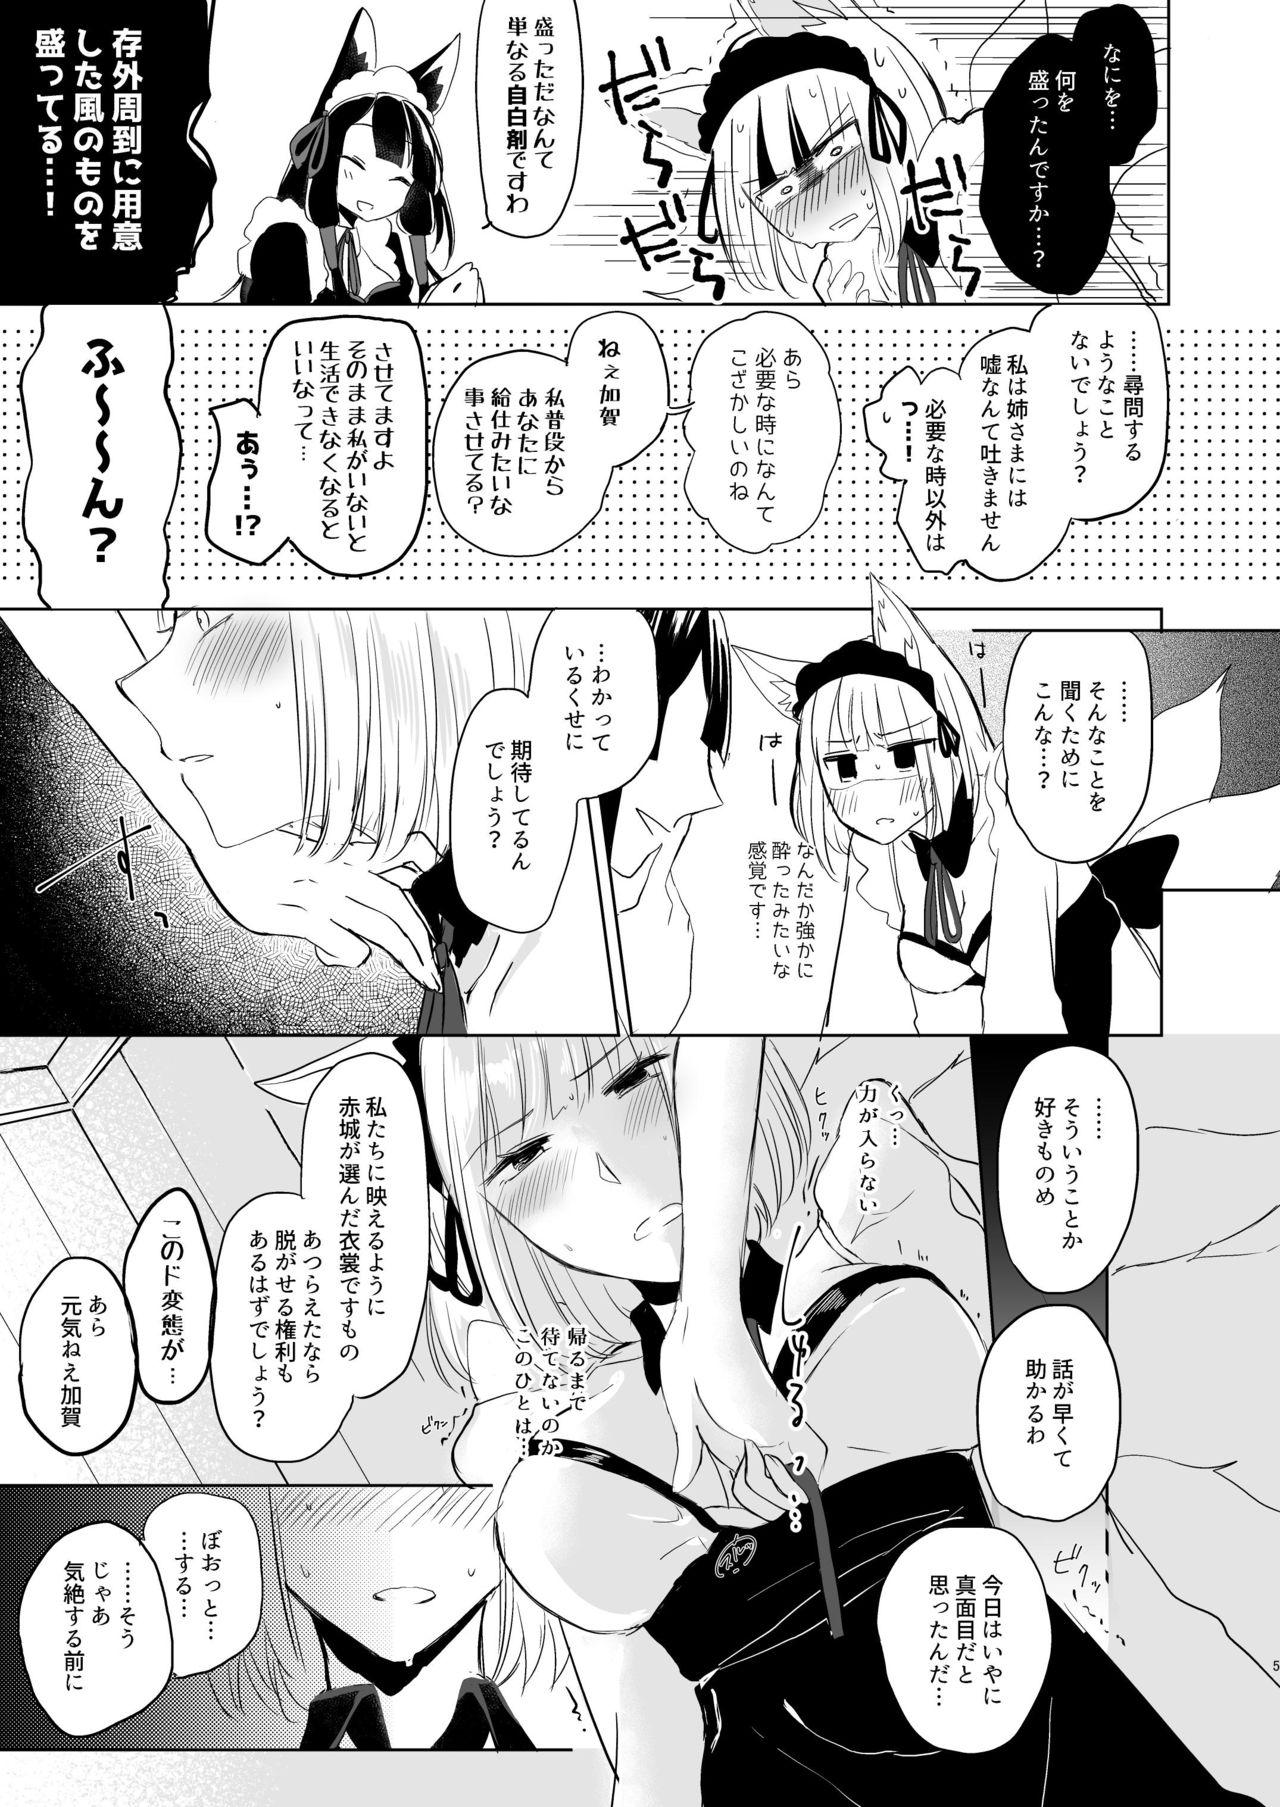 18 Year Old Nugasouga nugasumaiga kawaii koto ni wa kawarinai - Azur lane Carro - Page 4